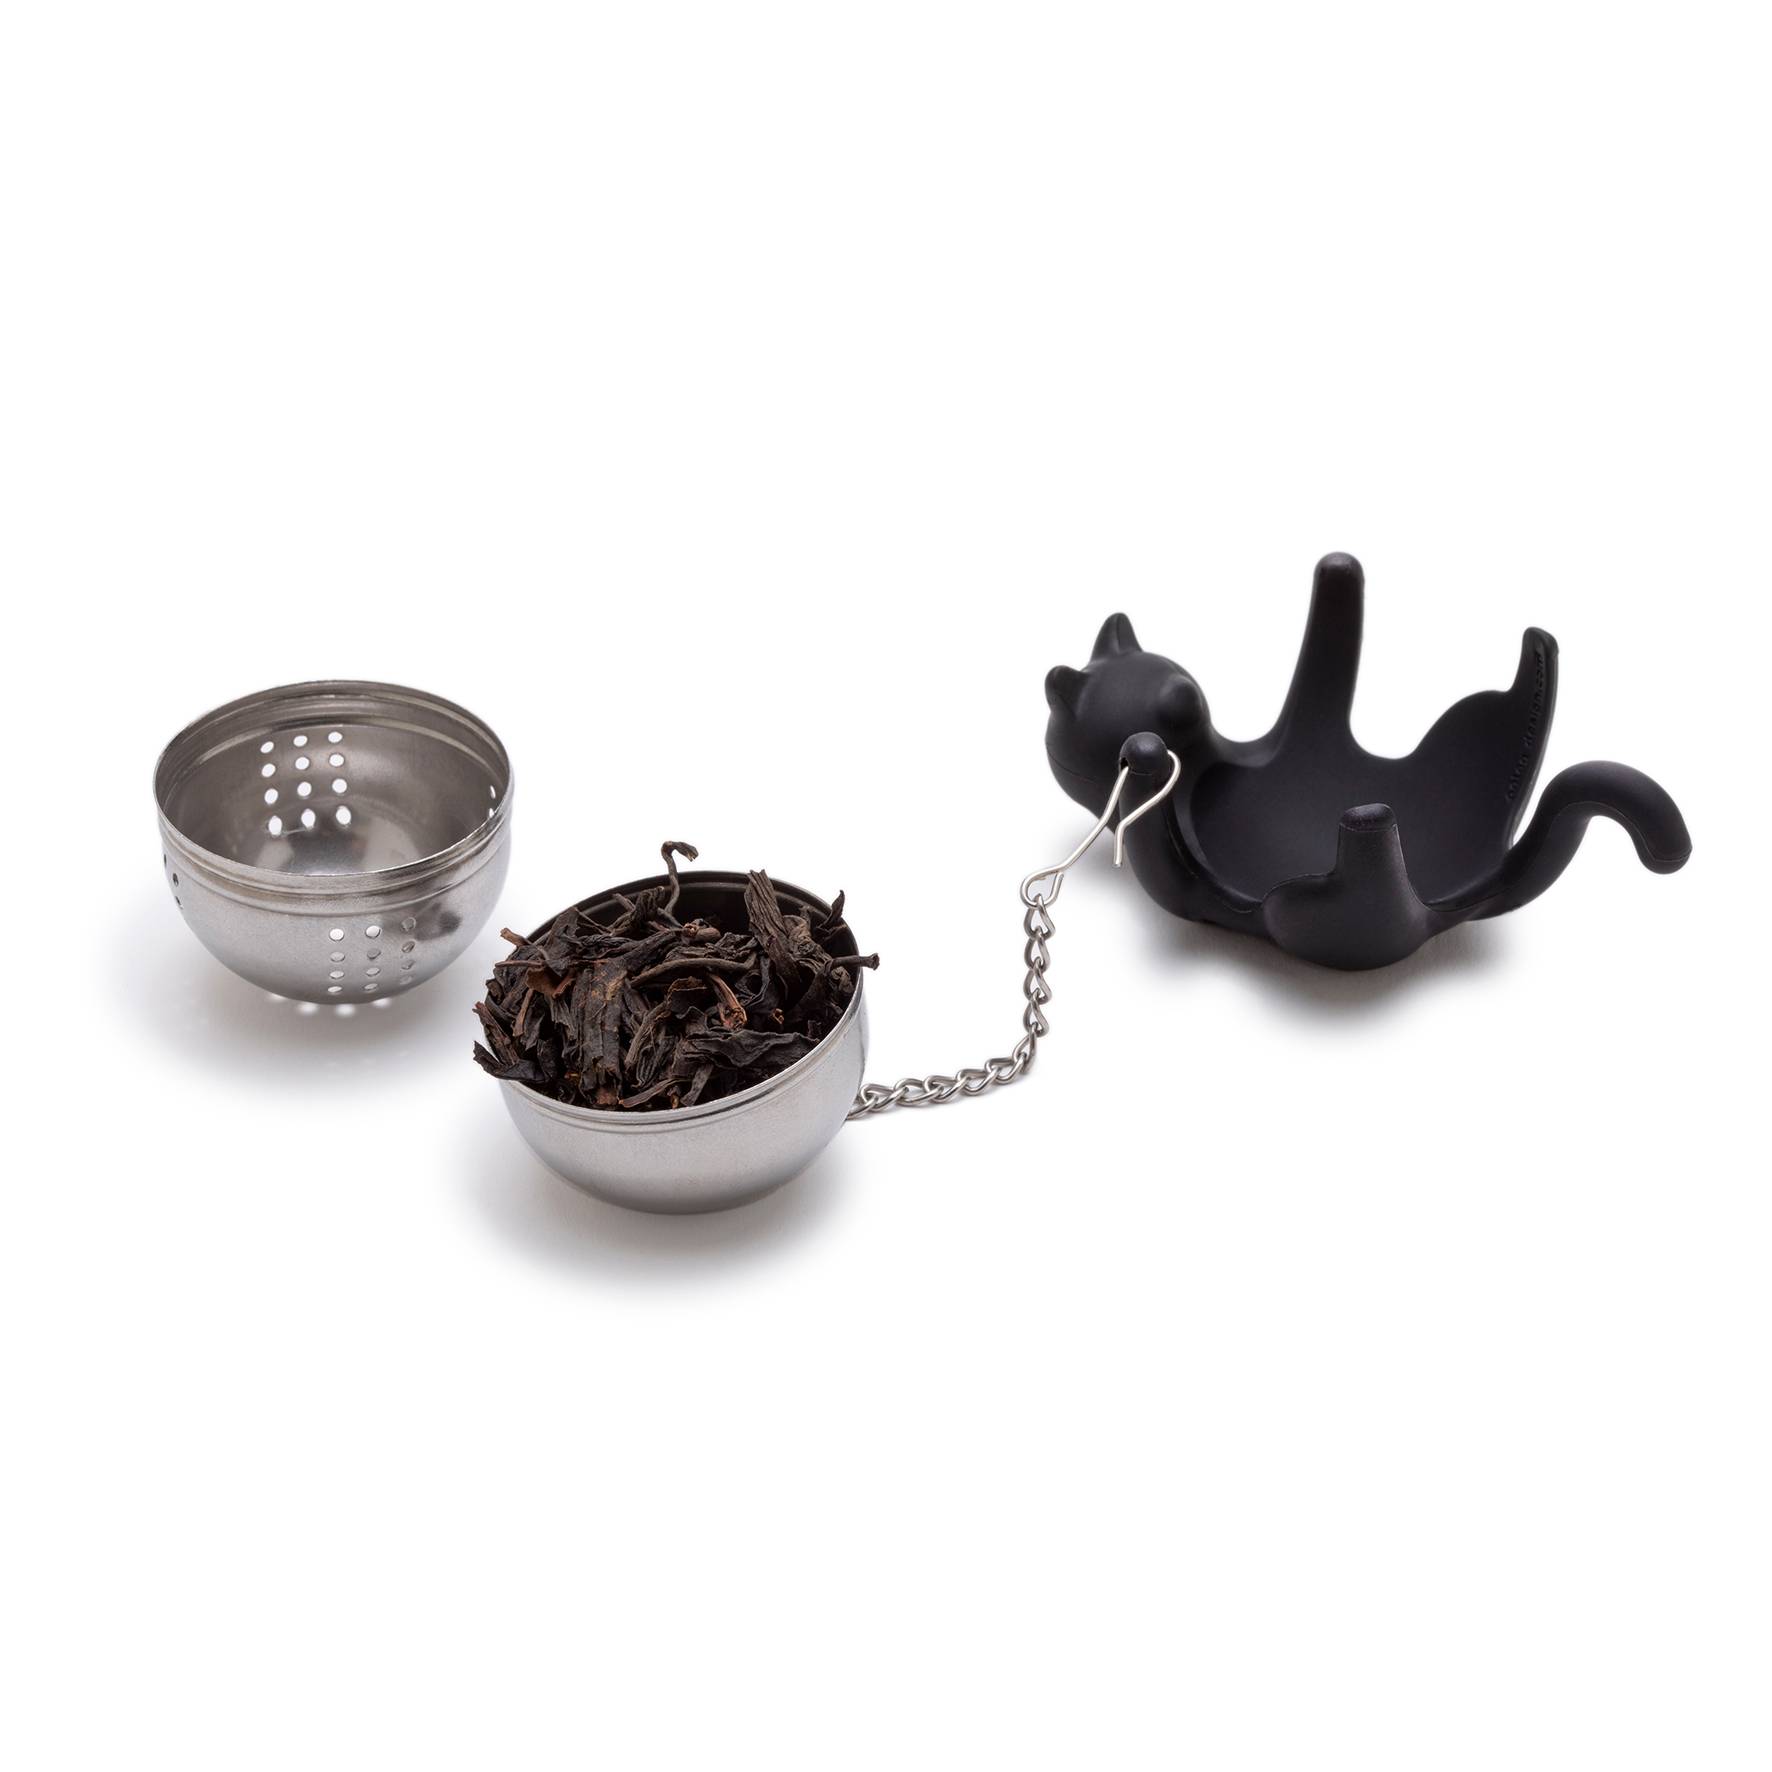 Boule à thé, infuseur,  le chat noir  en acier inoxydable, composée d'une  perle en cristal, un médaillon